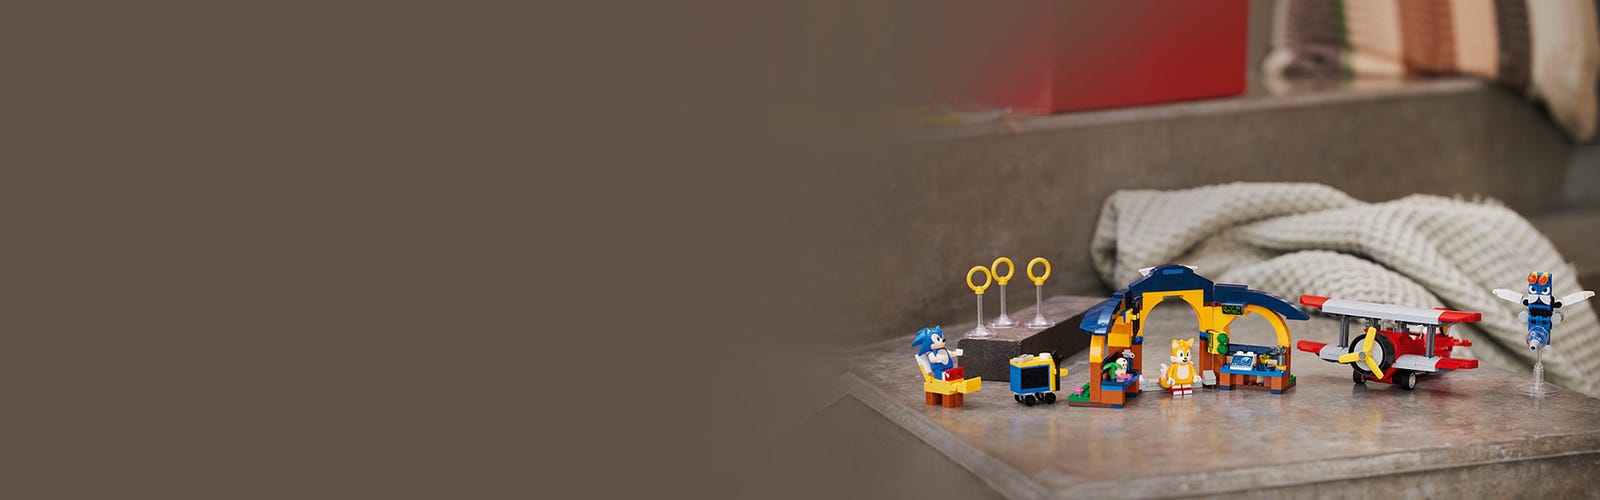 Lego Sonic - Oficina do Tails e Avião Tornado 76991 - Vila Toys